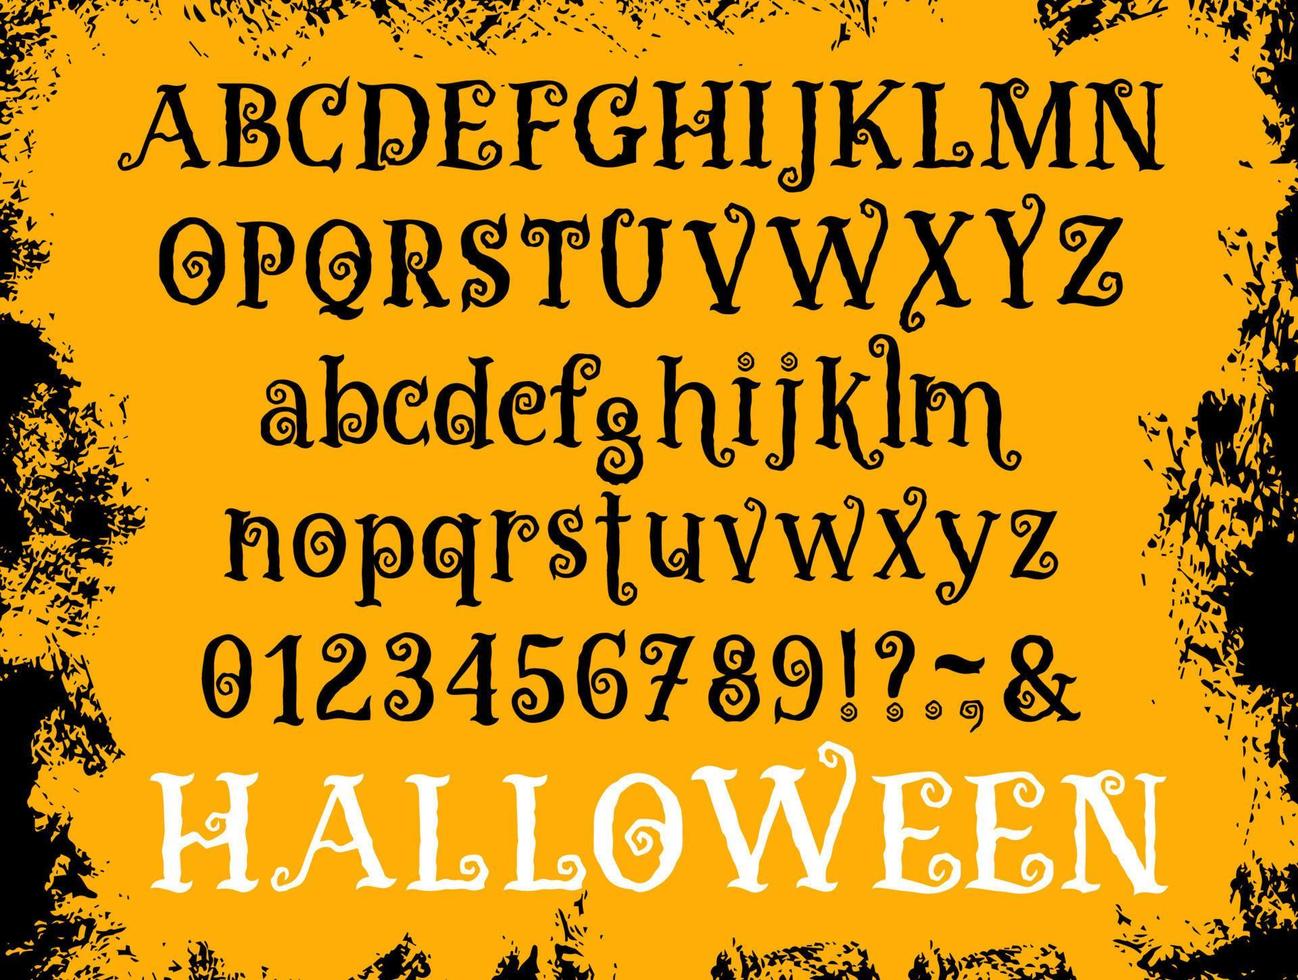 Halloween cartoon type font vector set